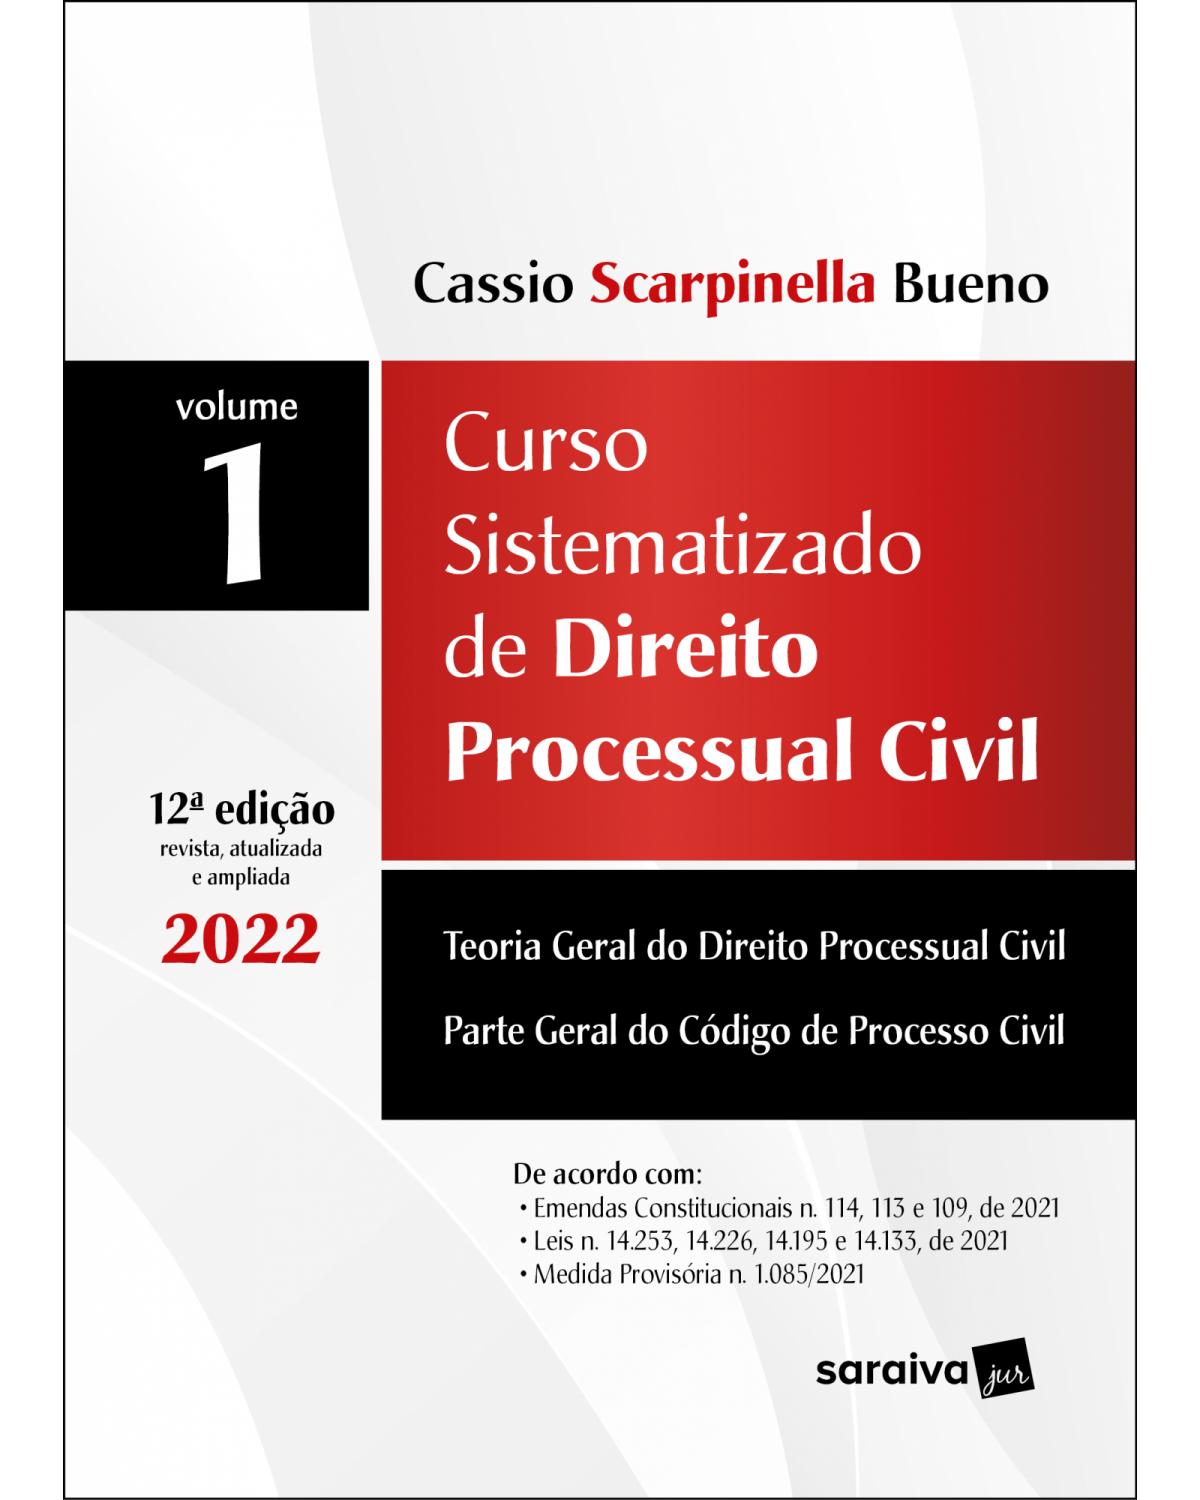 Curso sistematizado de direito processual civil - Volume 1 - 12ª Edição | 2022